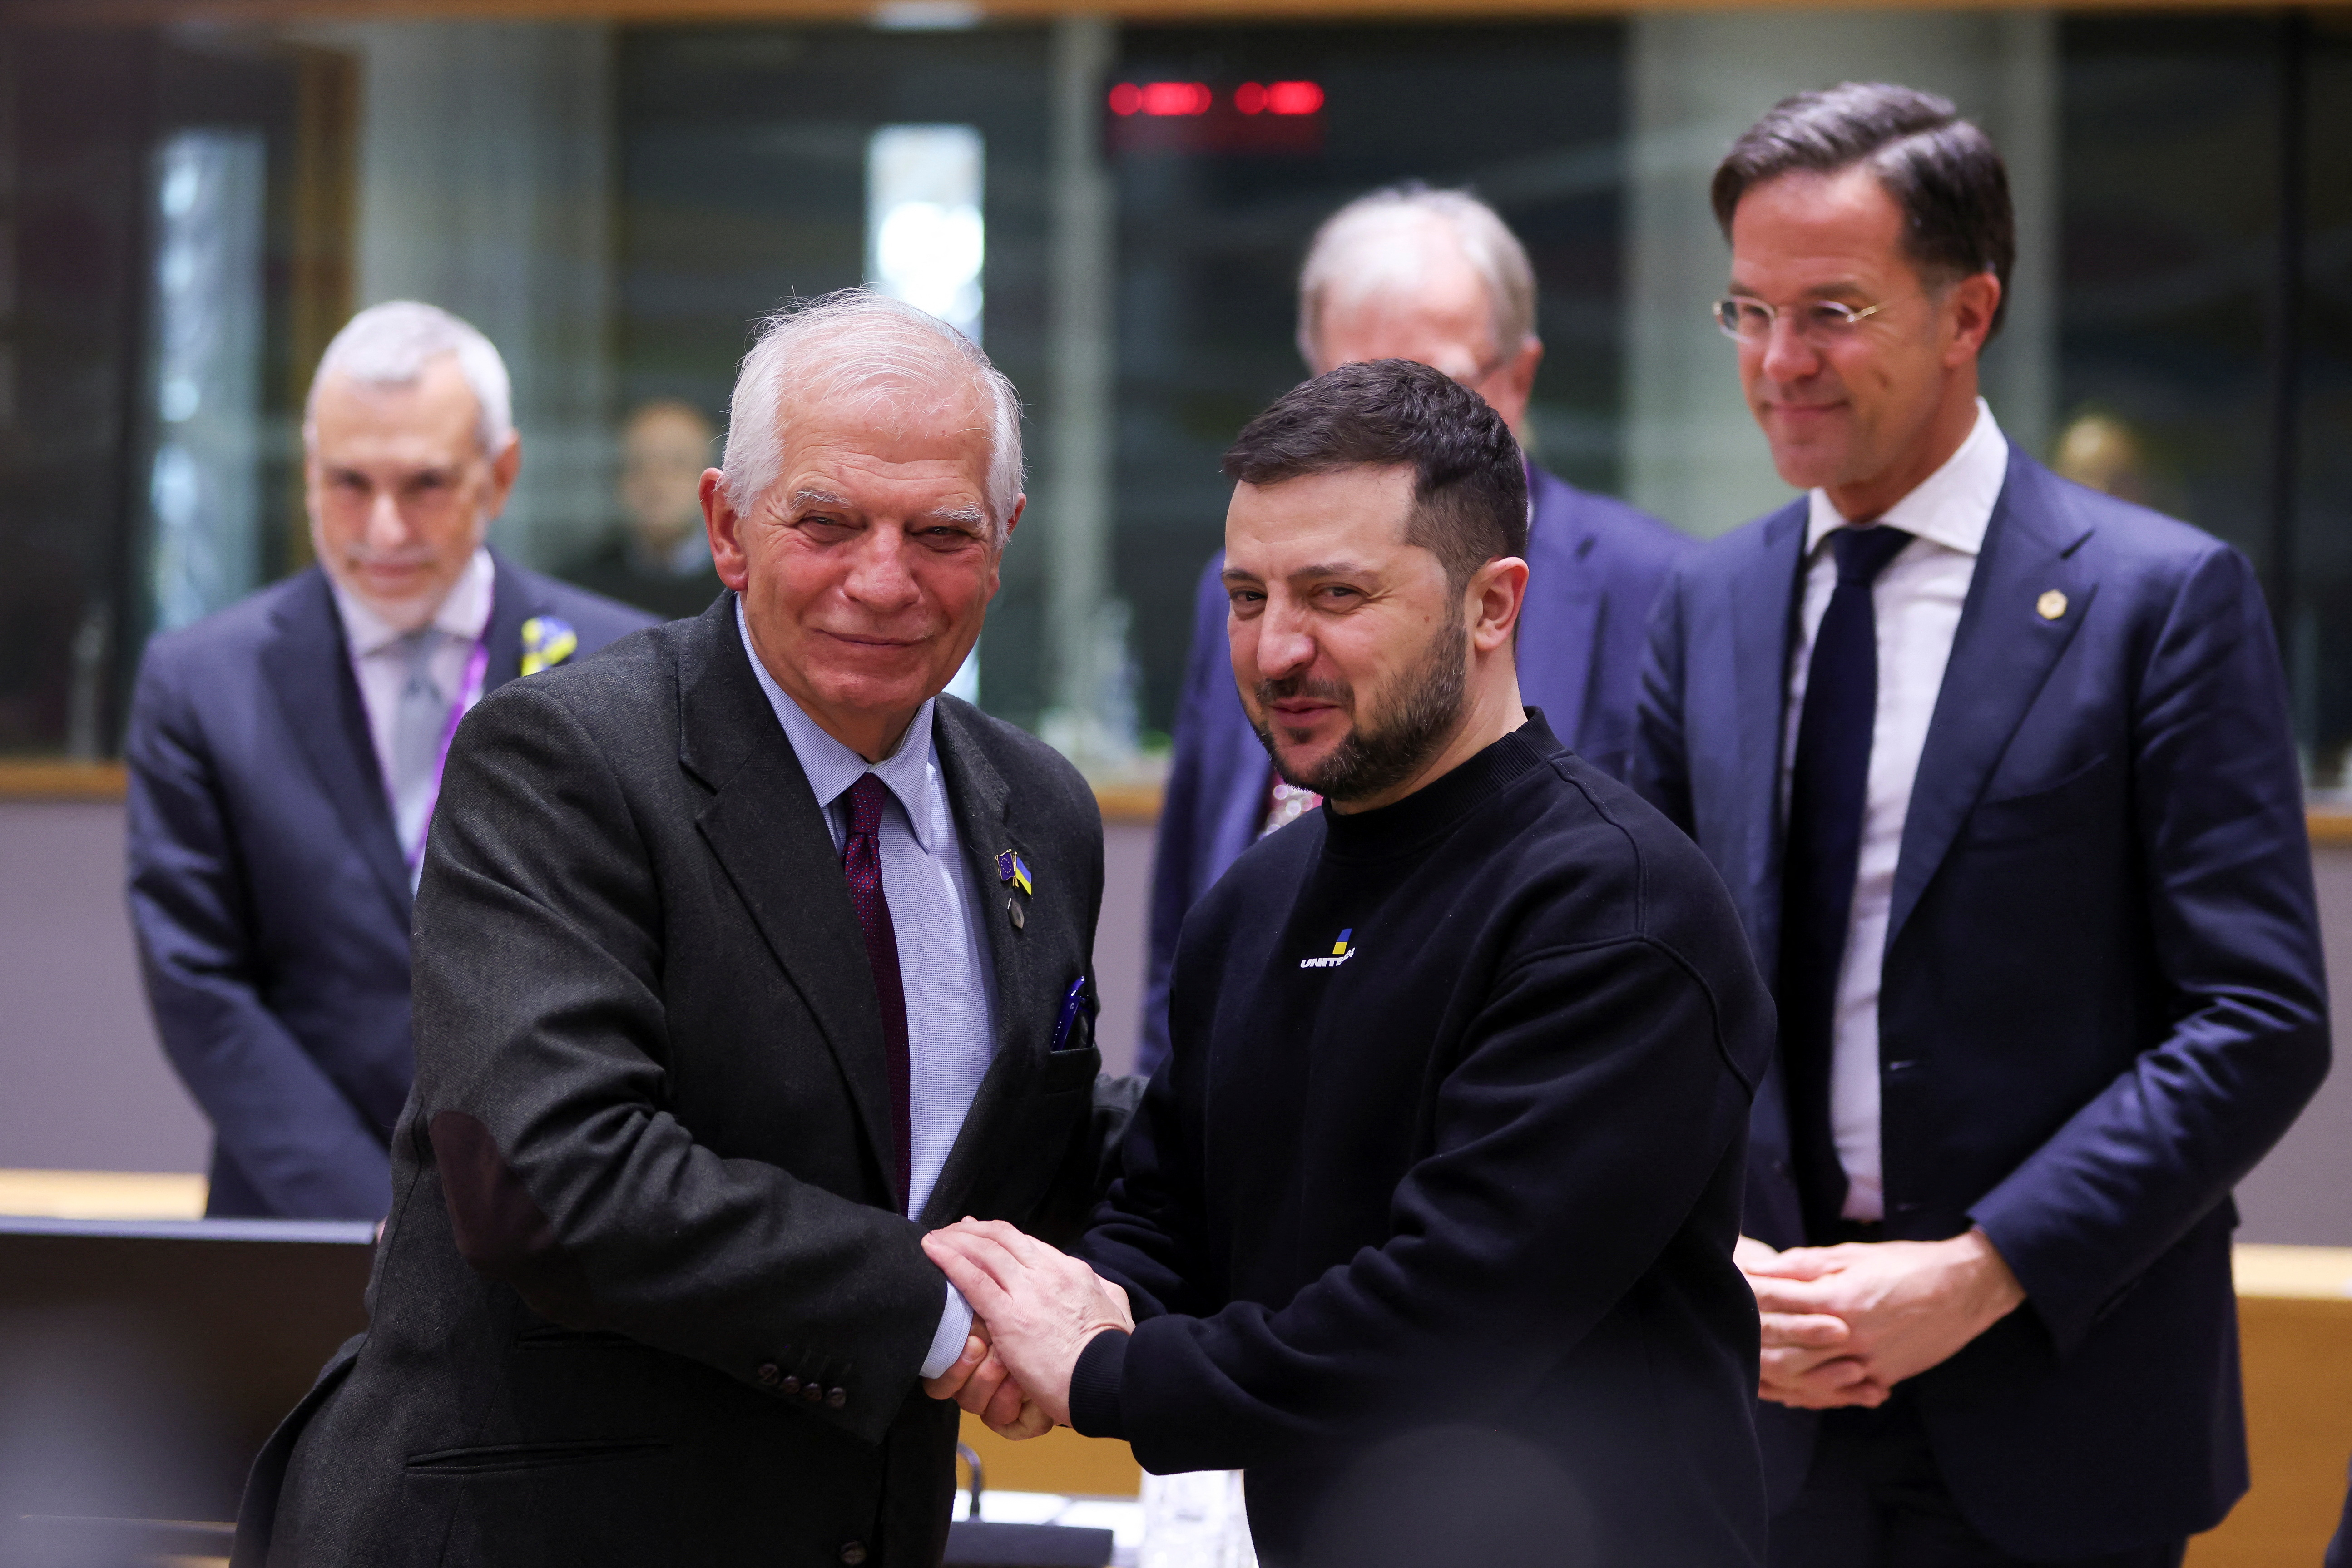 El presidente ucraniano, Volodymyr Zelenskiy, estrecha la mano del Alto Representante de la Unión Europea para Asuntos Exteriores y Política de Seguridad, Josep Borrell, mientras asisten a la cumbre de líderes europeos en Bruselas, Bélgica, el 9 de febrero de 2023 (Reuters)